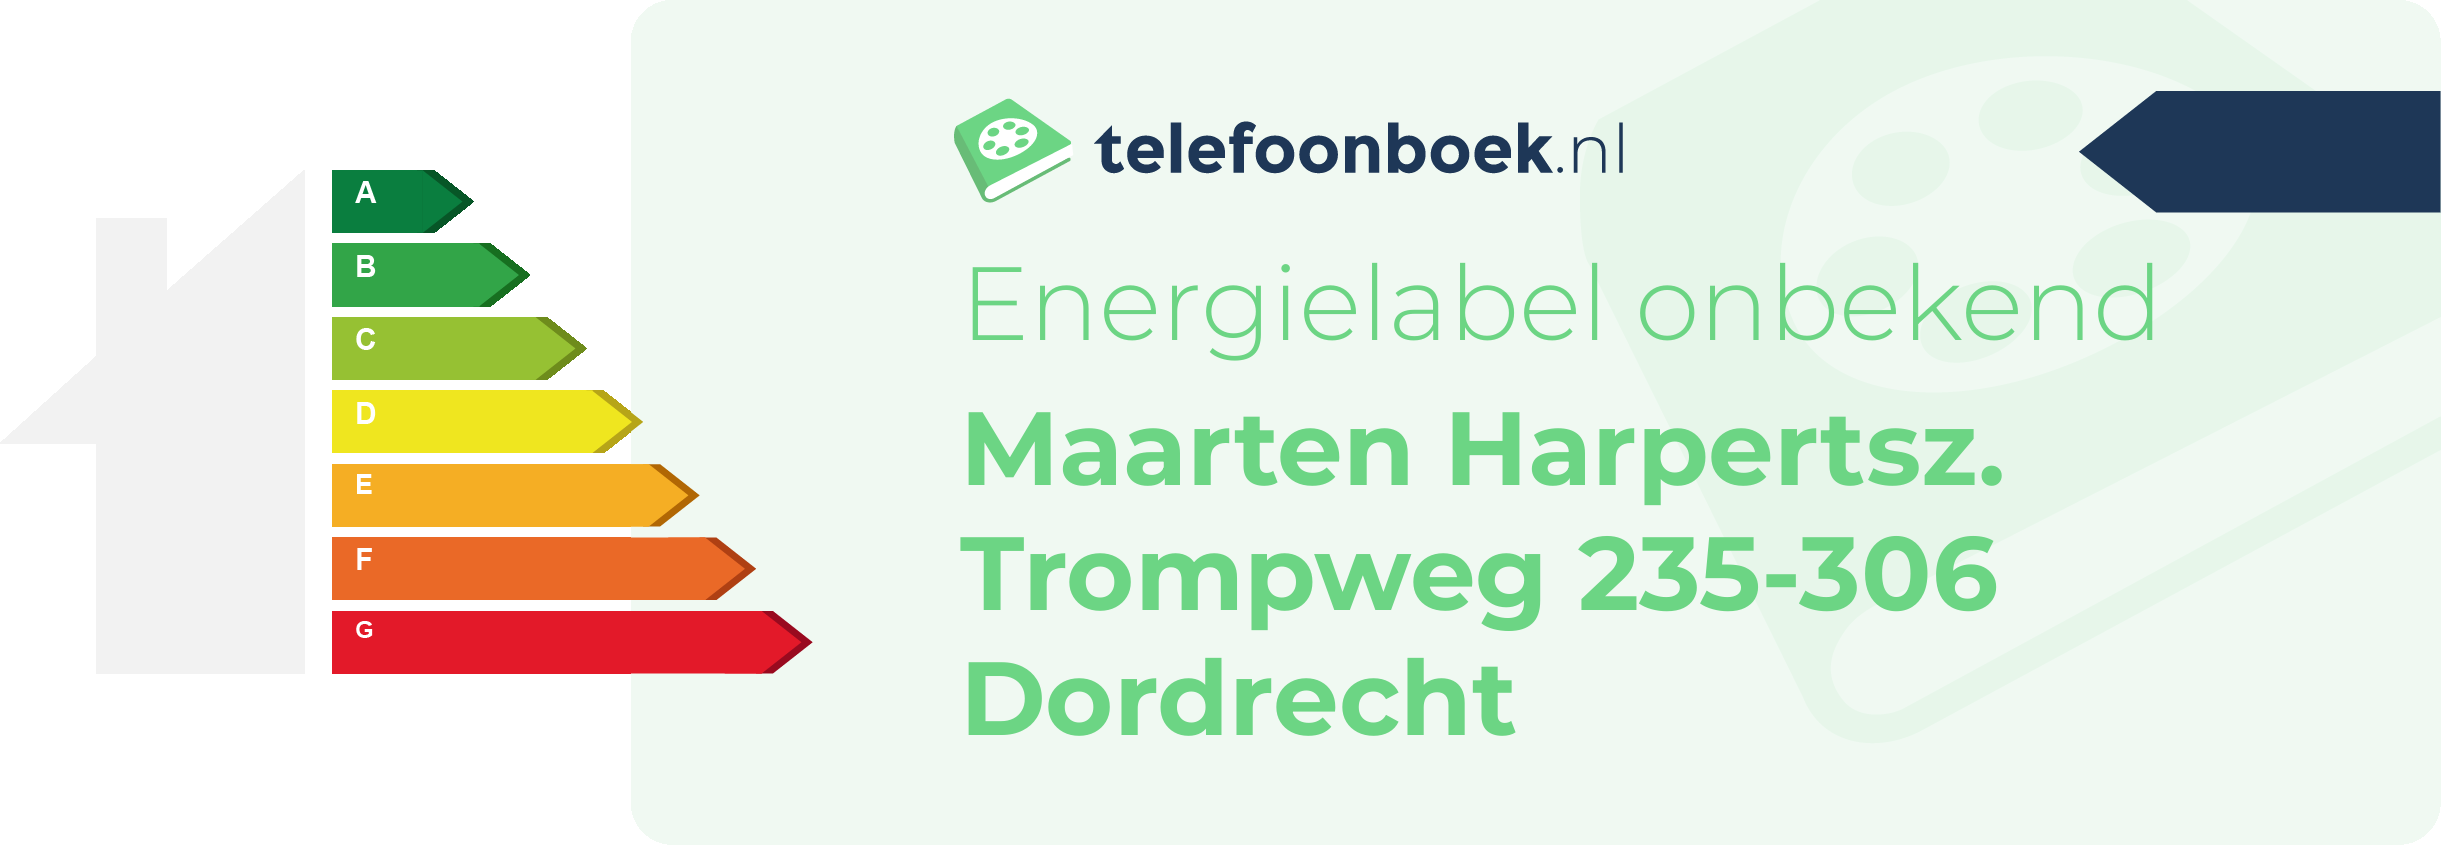 Energielabel Maarten Harpertsz. Trompweg 235-306 Dordrecht